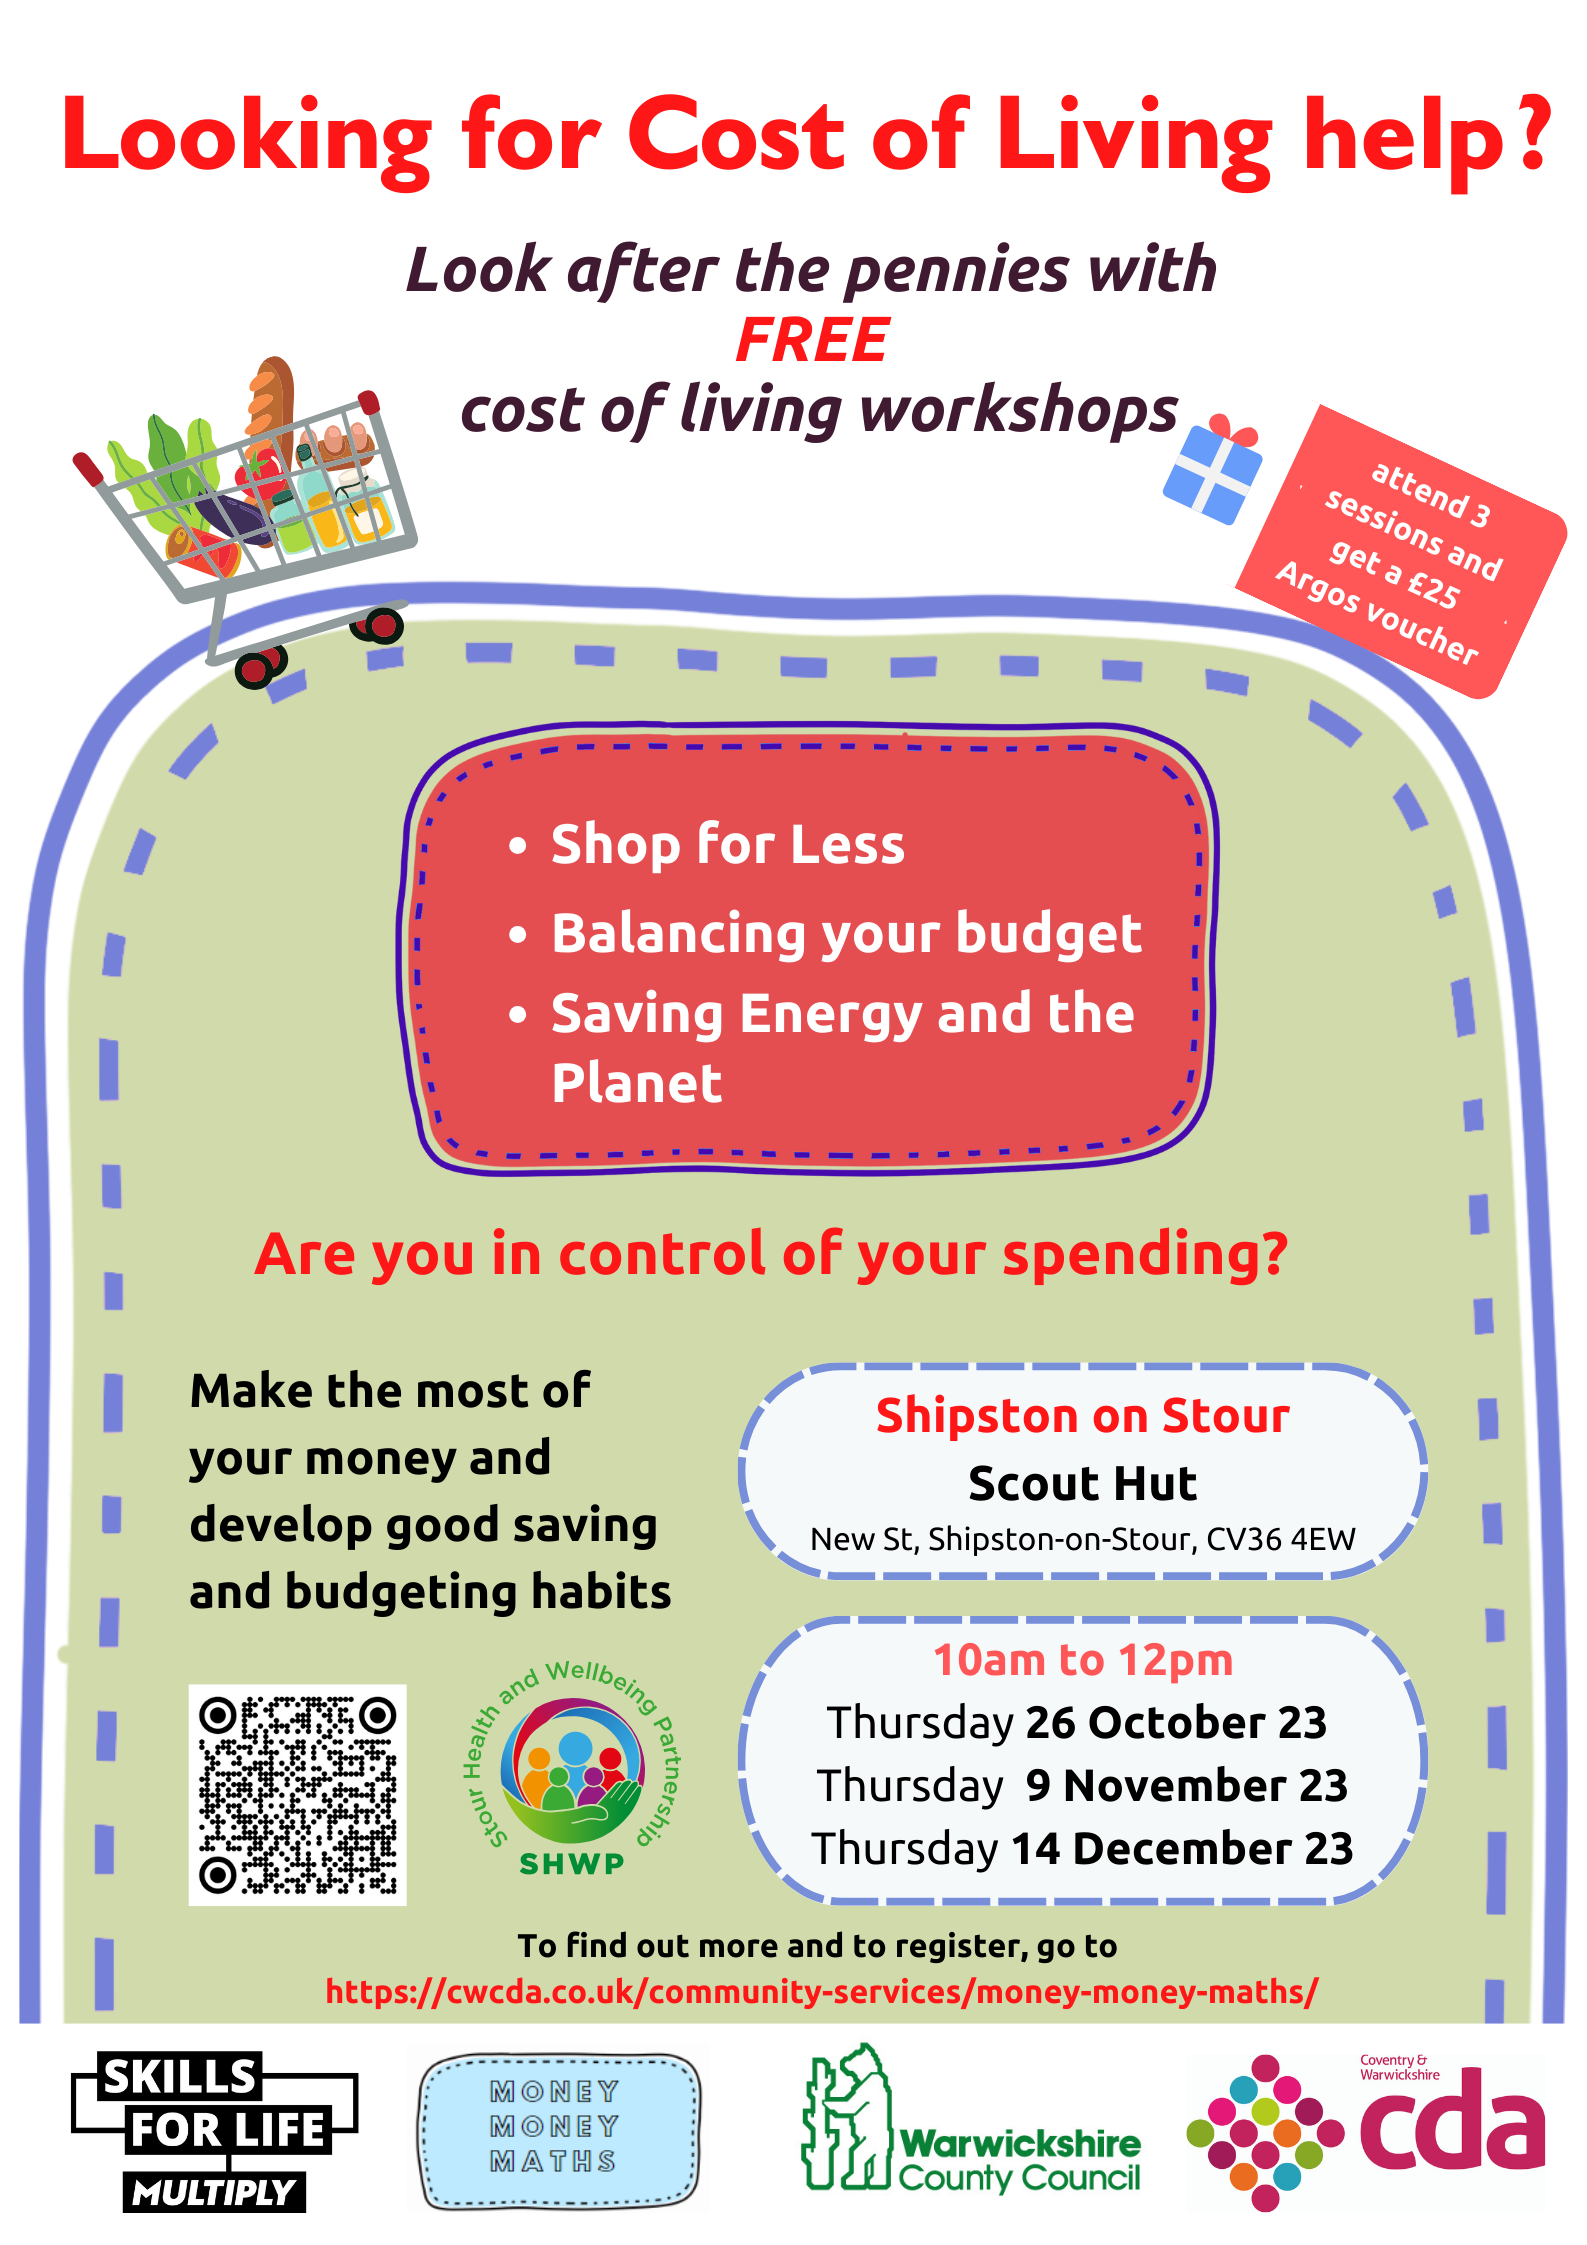 Reminder FREE cost of living workshop Thursday 14 December